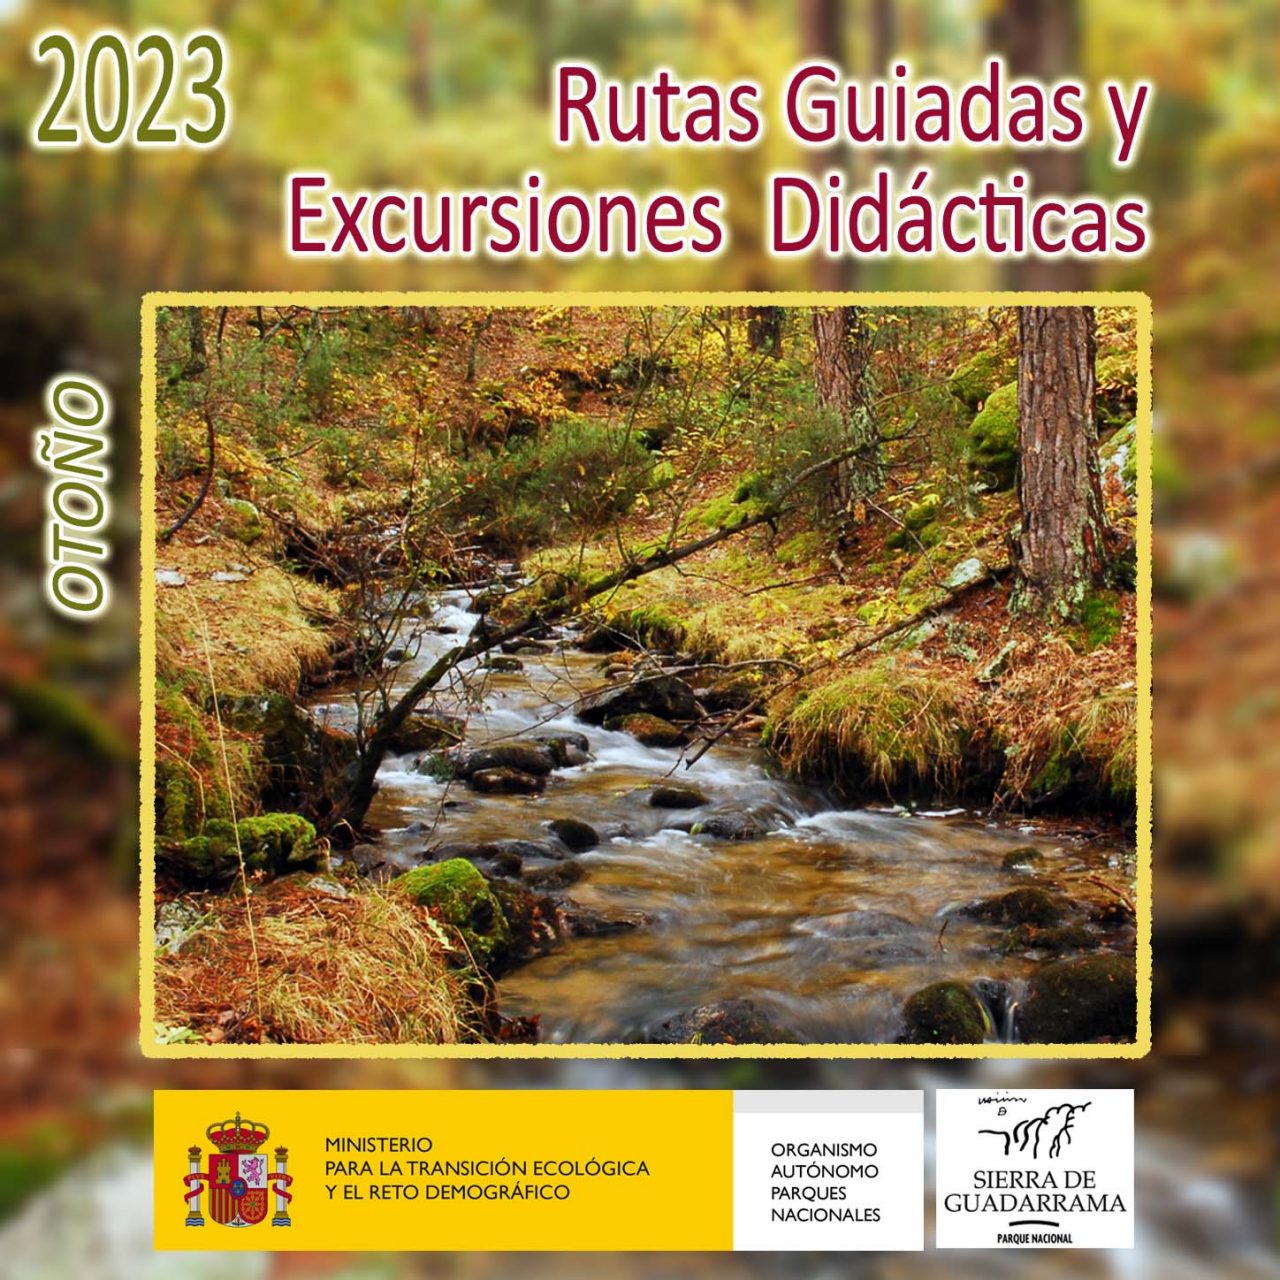 Programa de rutas guiadas y excursiones didácticas - Otoño 2023